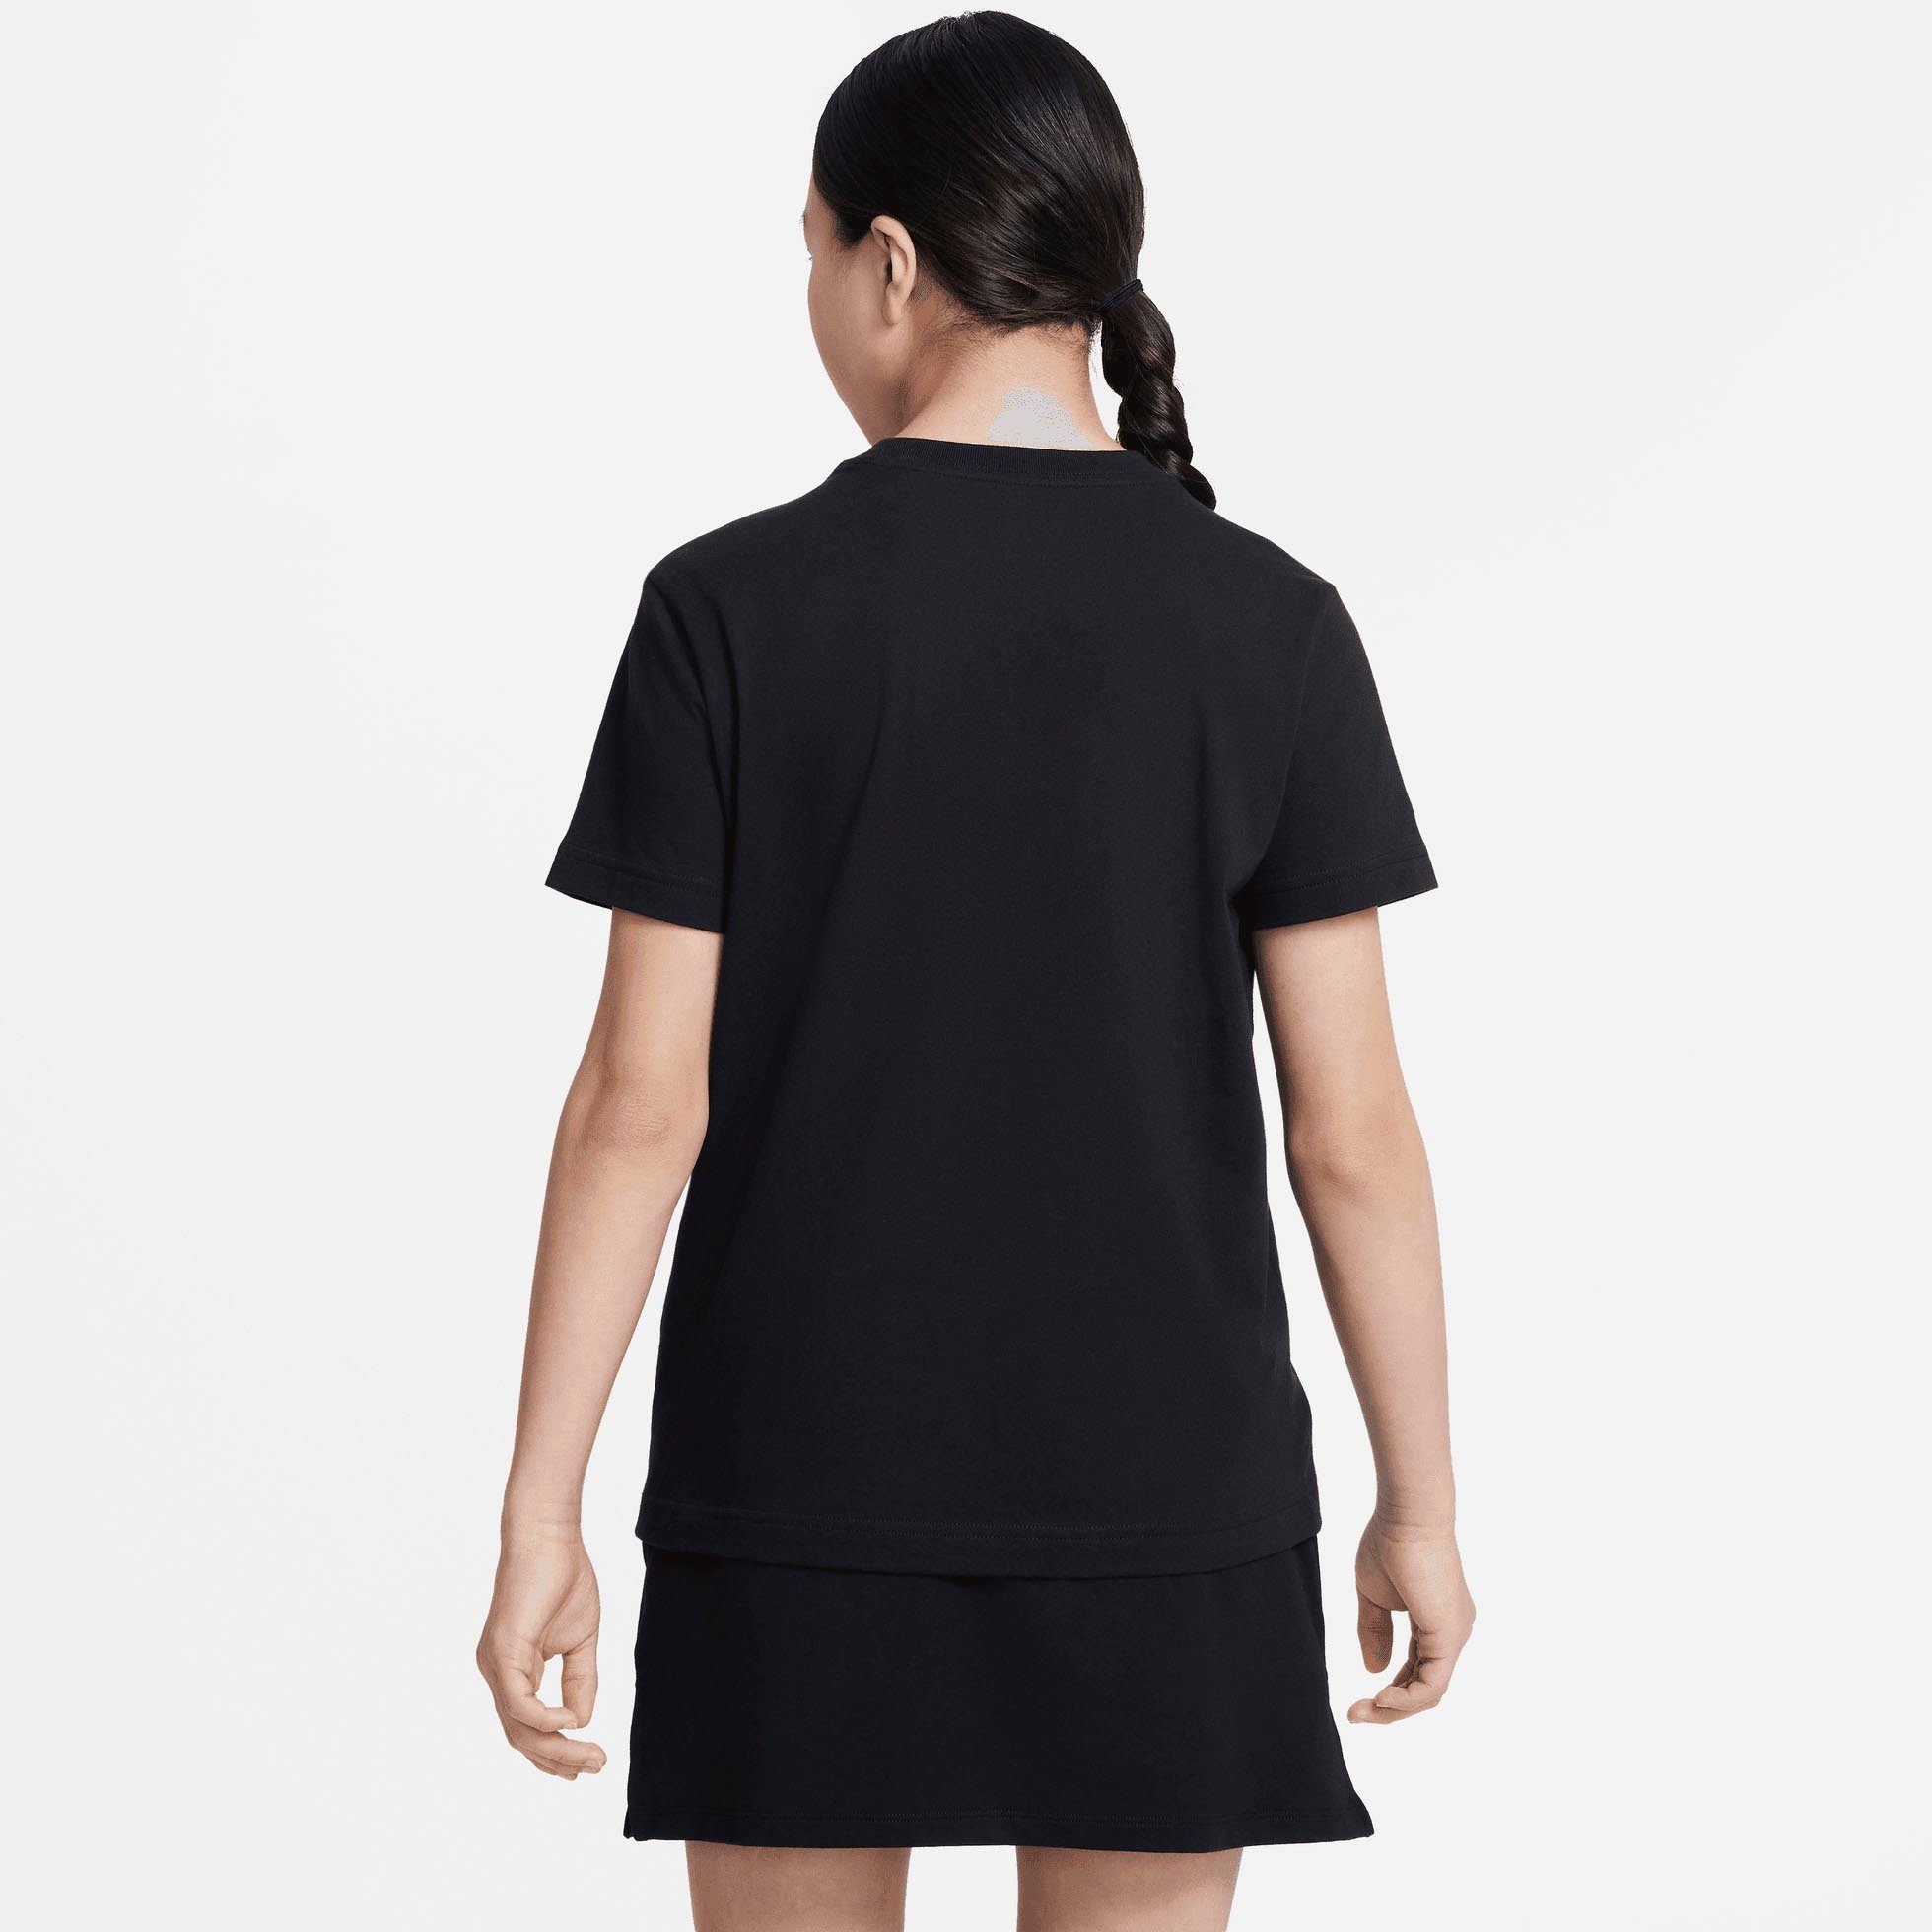 Nike Sportswear T-Shirt (GIRLS) schwarz KIDS' T-SHIRT BIG